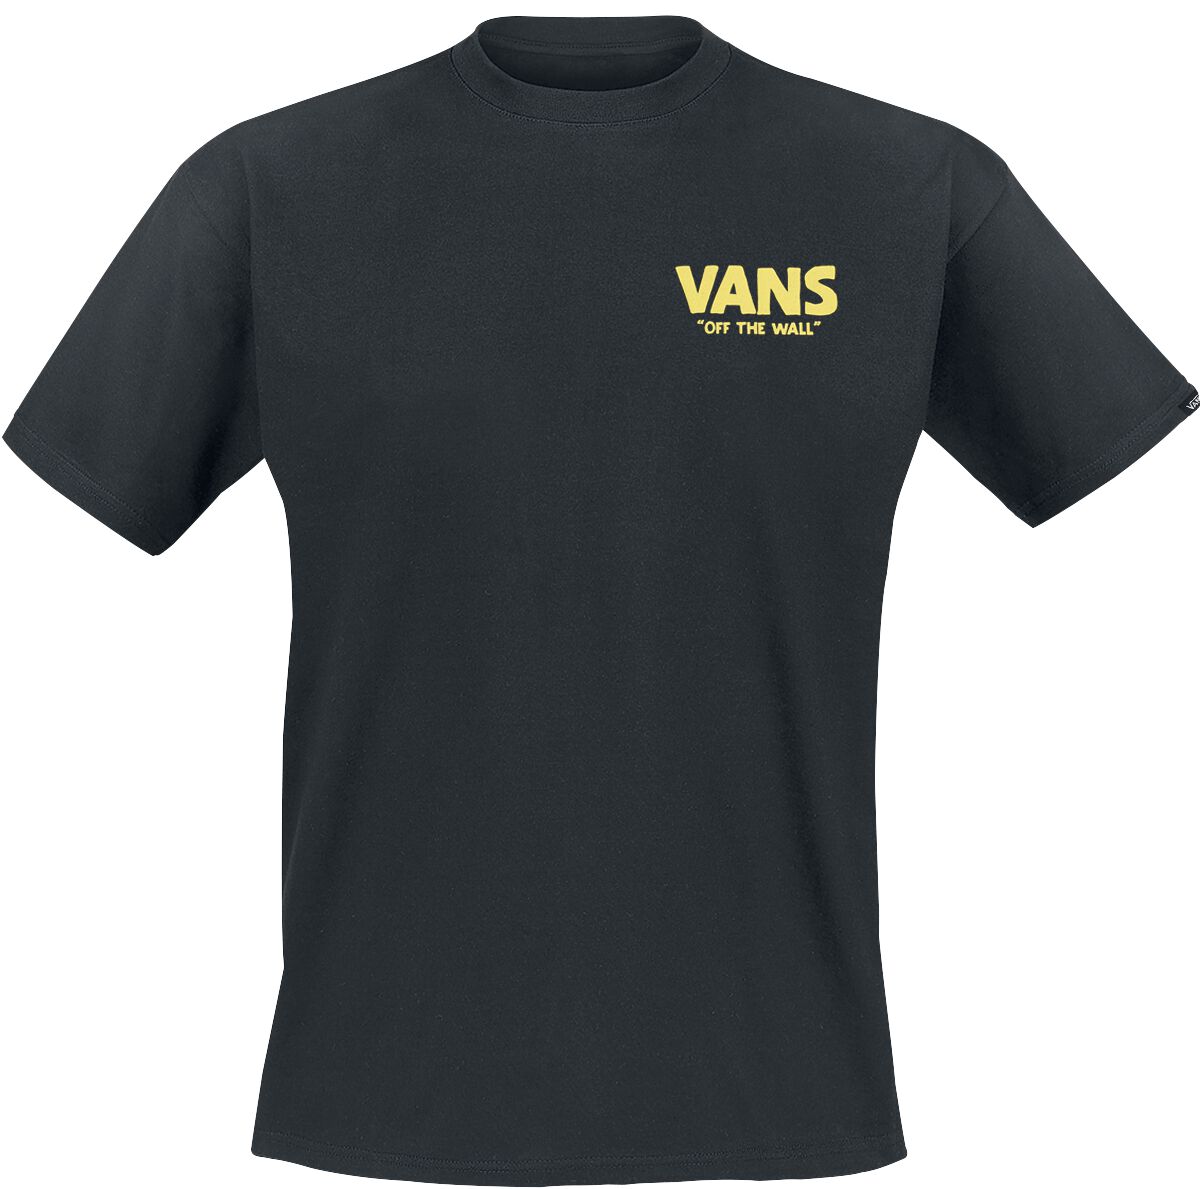 Vans T-Shirt - Stay Cool Tee - S bis XXL - für Männer - Größe S - schwarz